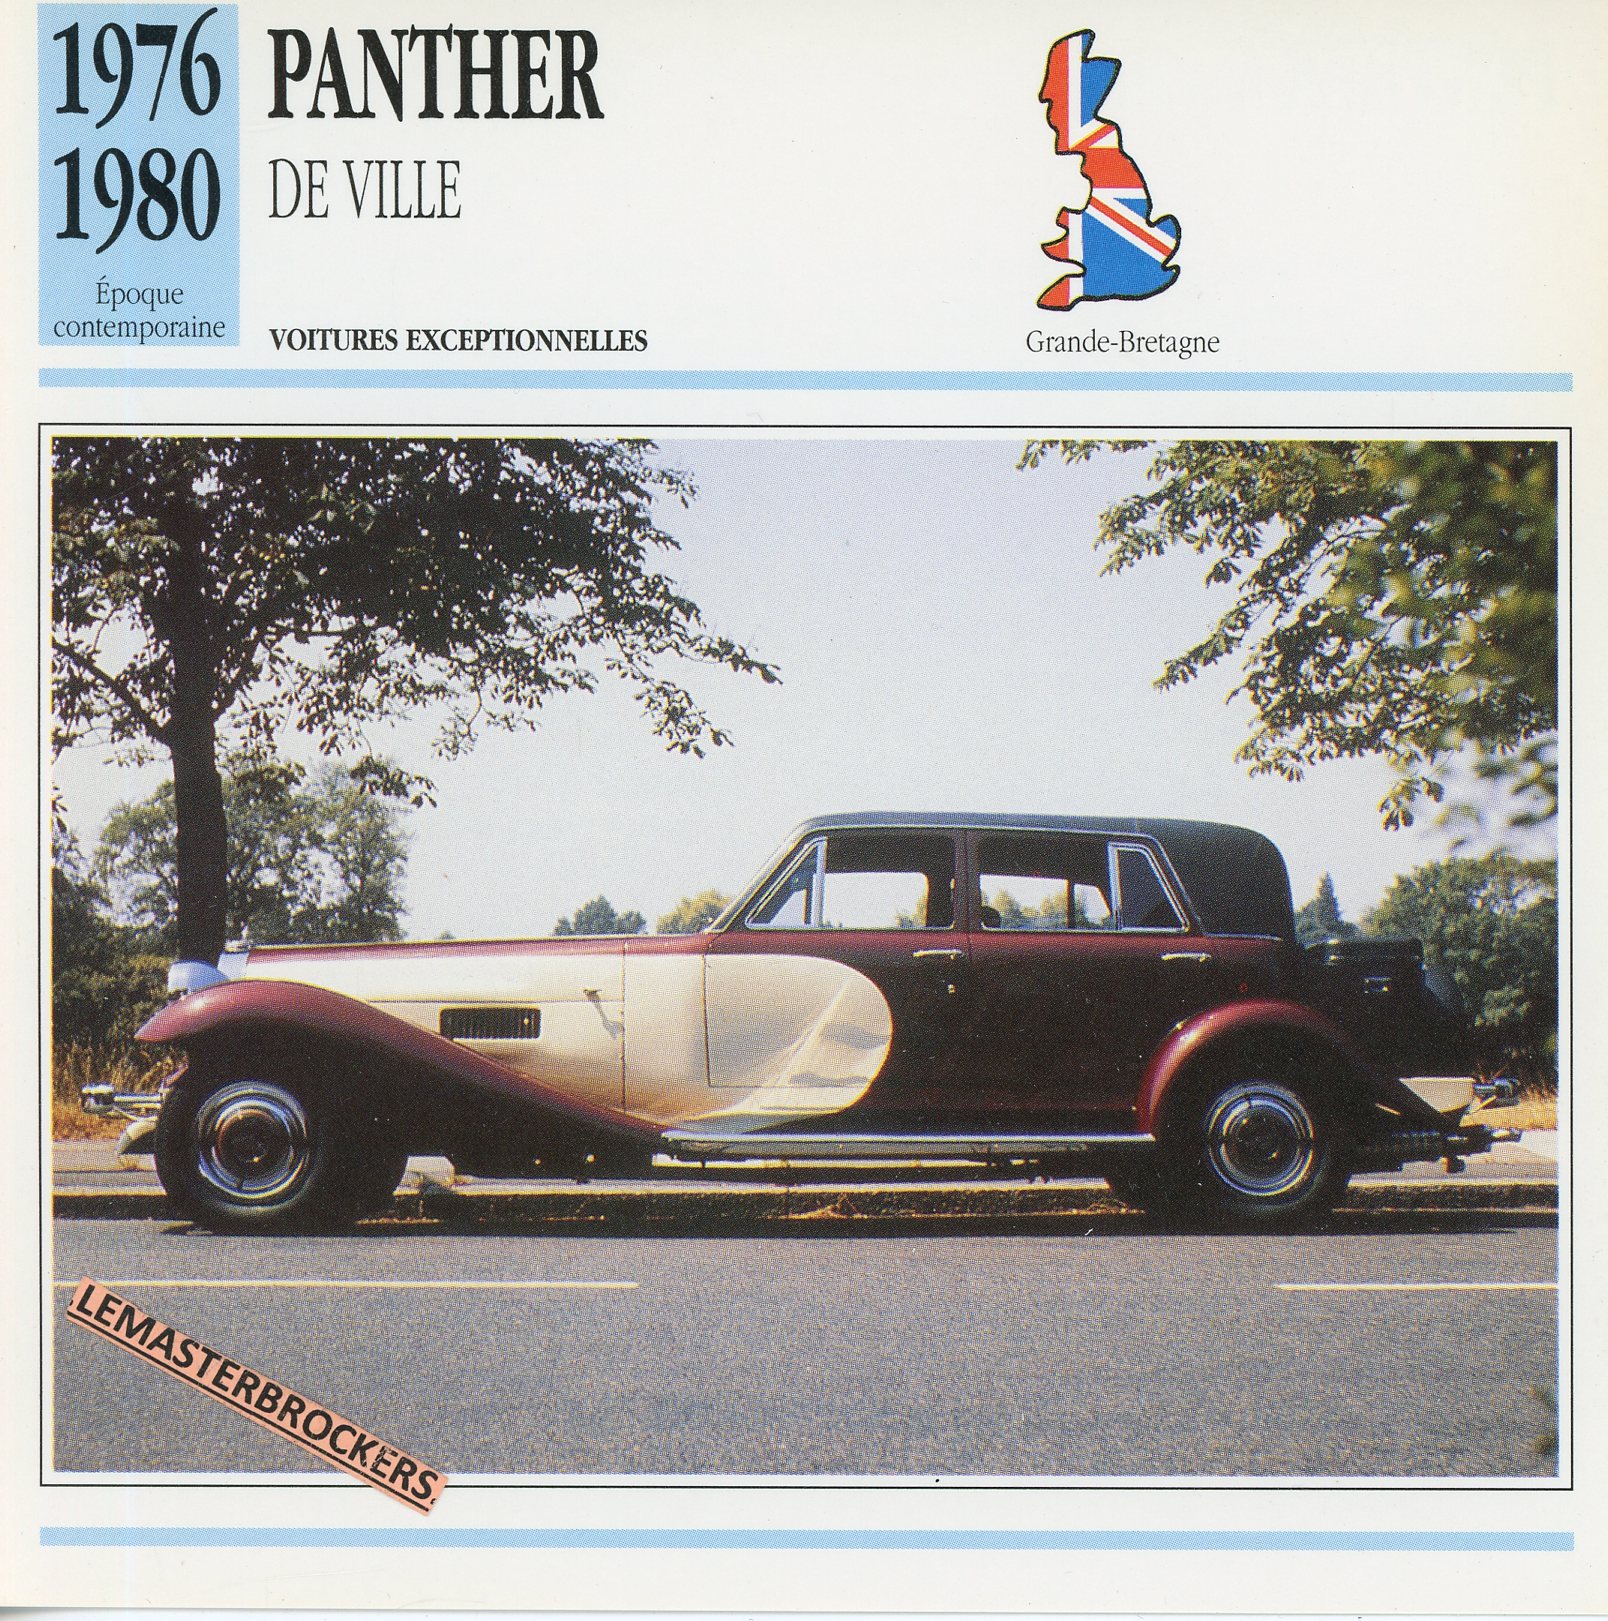 FICHE-PANTHER-DE-VILLE-1976-1980-LEMASTERBROCKERS-FICHE-AUTO-CARS-CARD-ATLAS-FRENCH